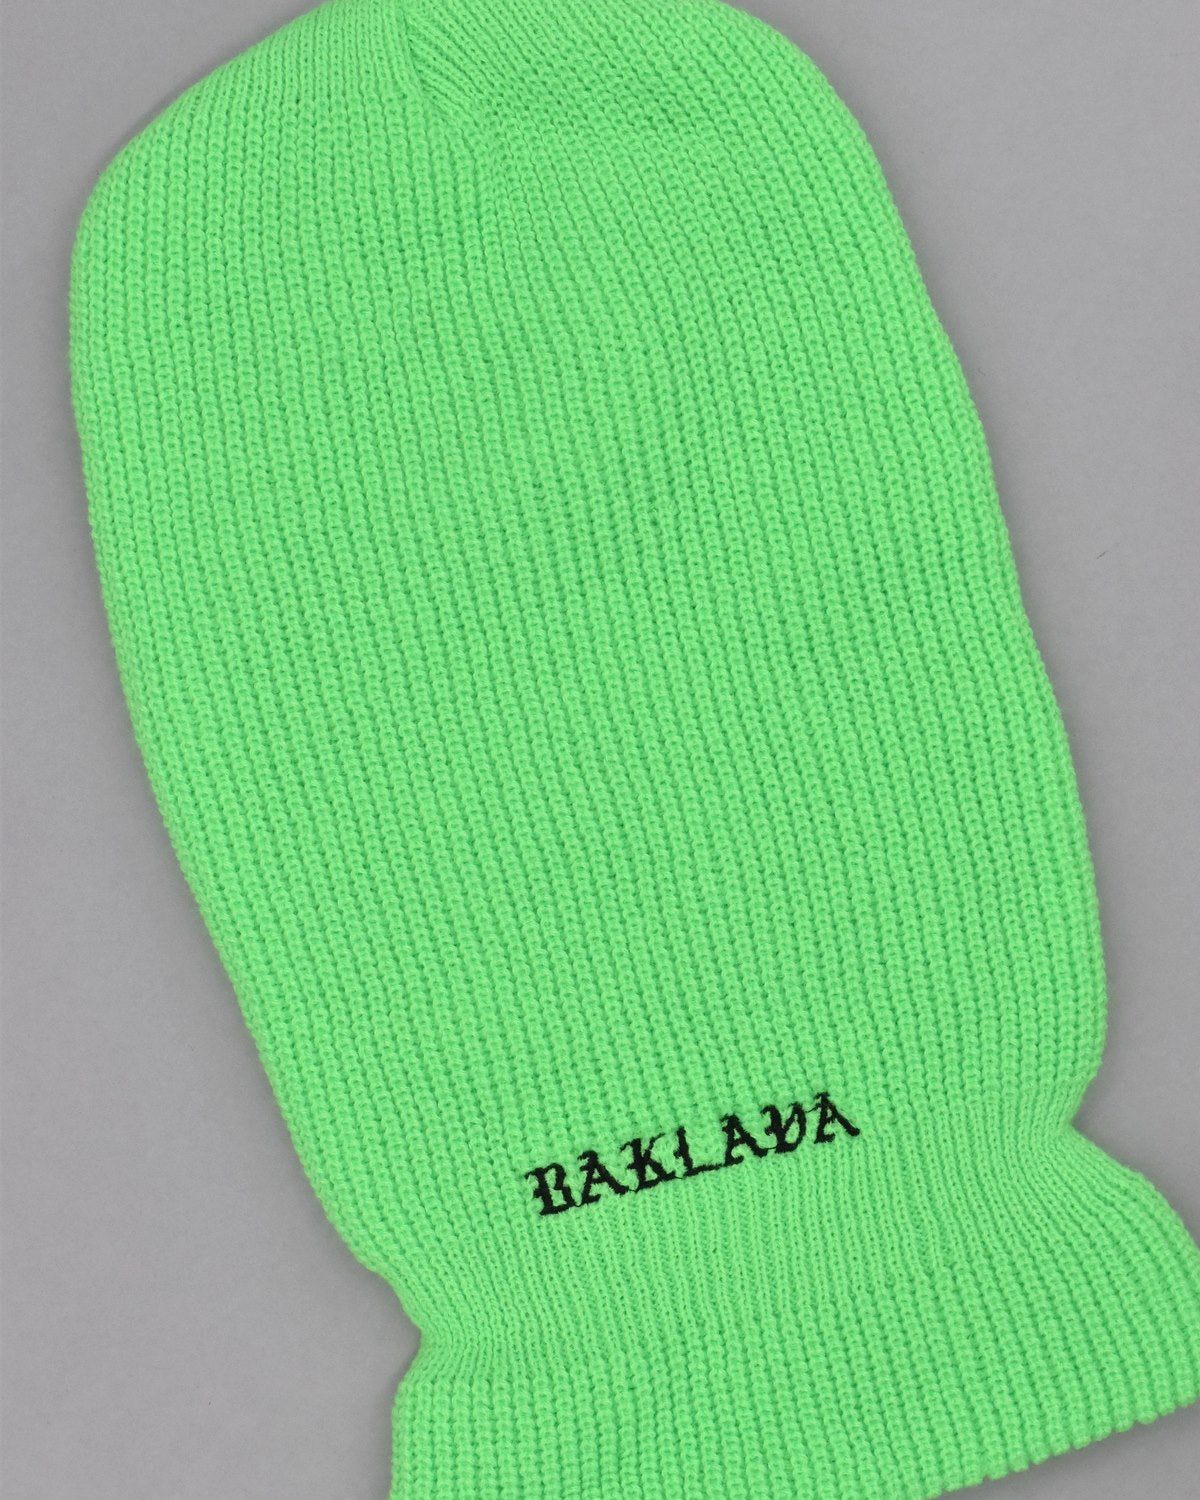 Baklava Balaclava - Green